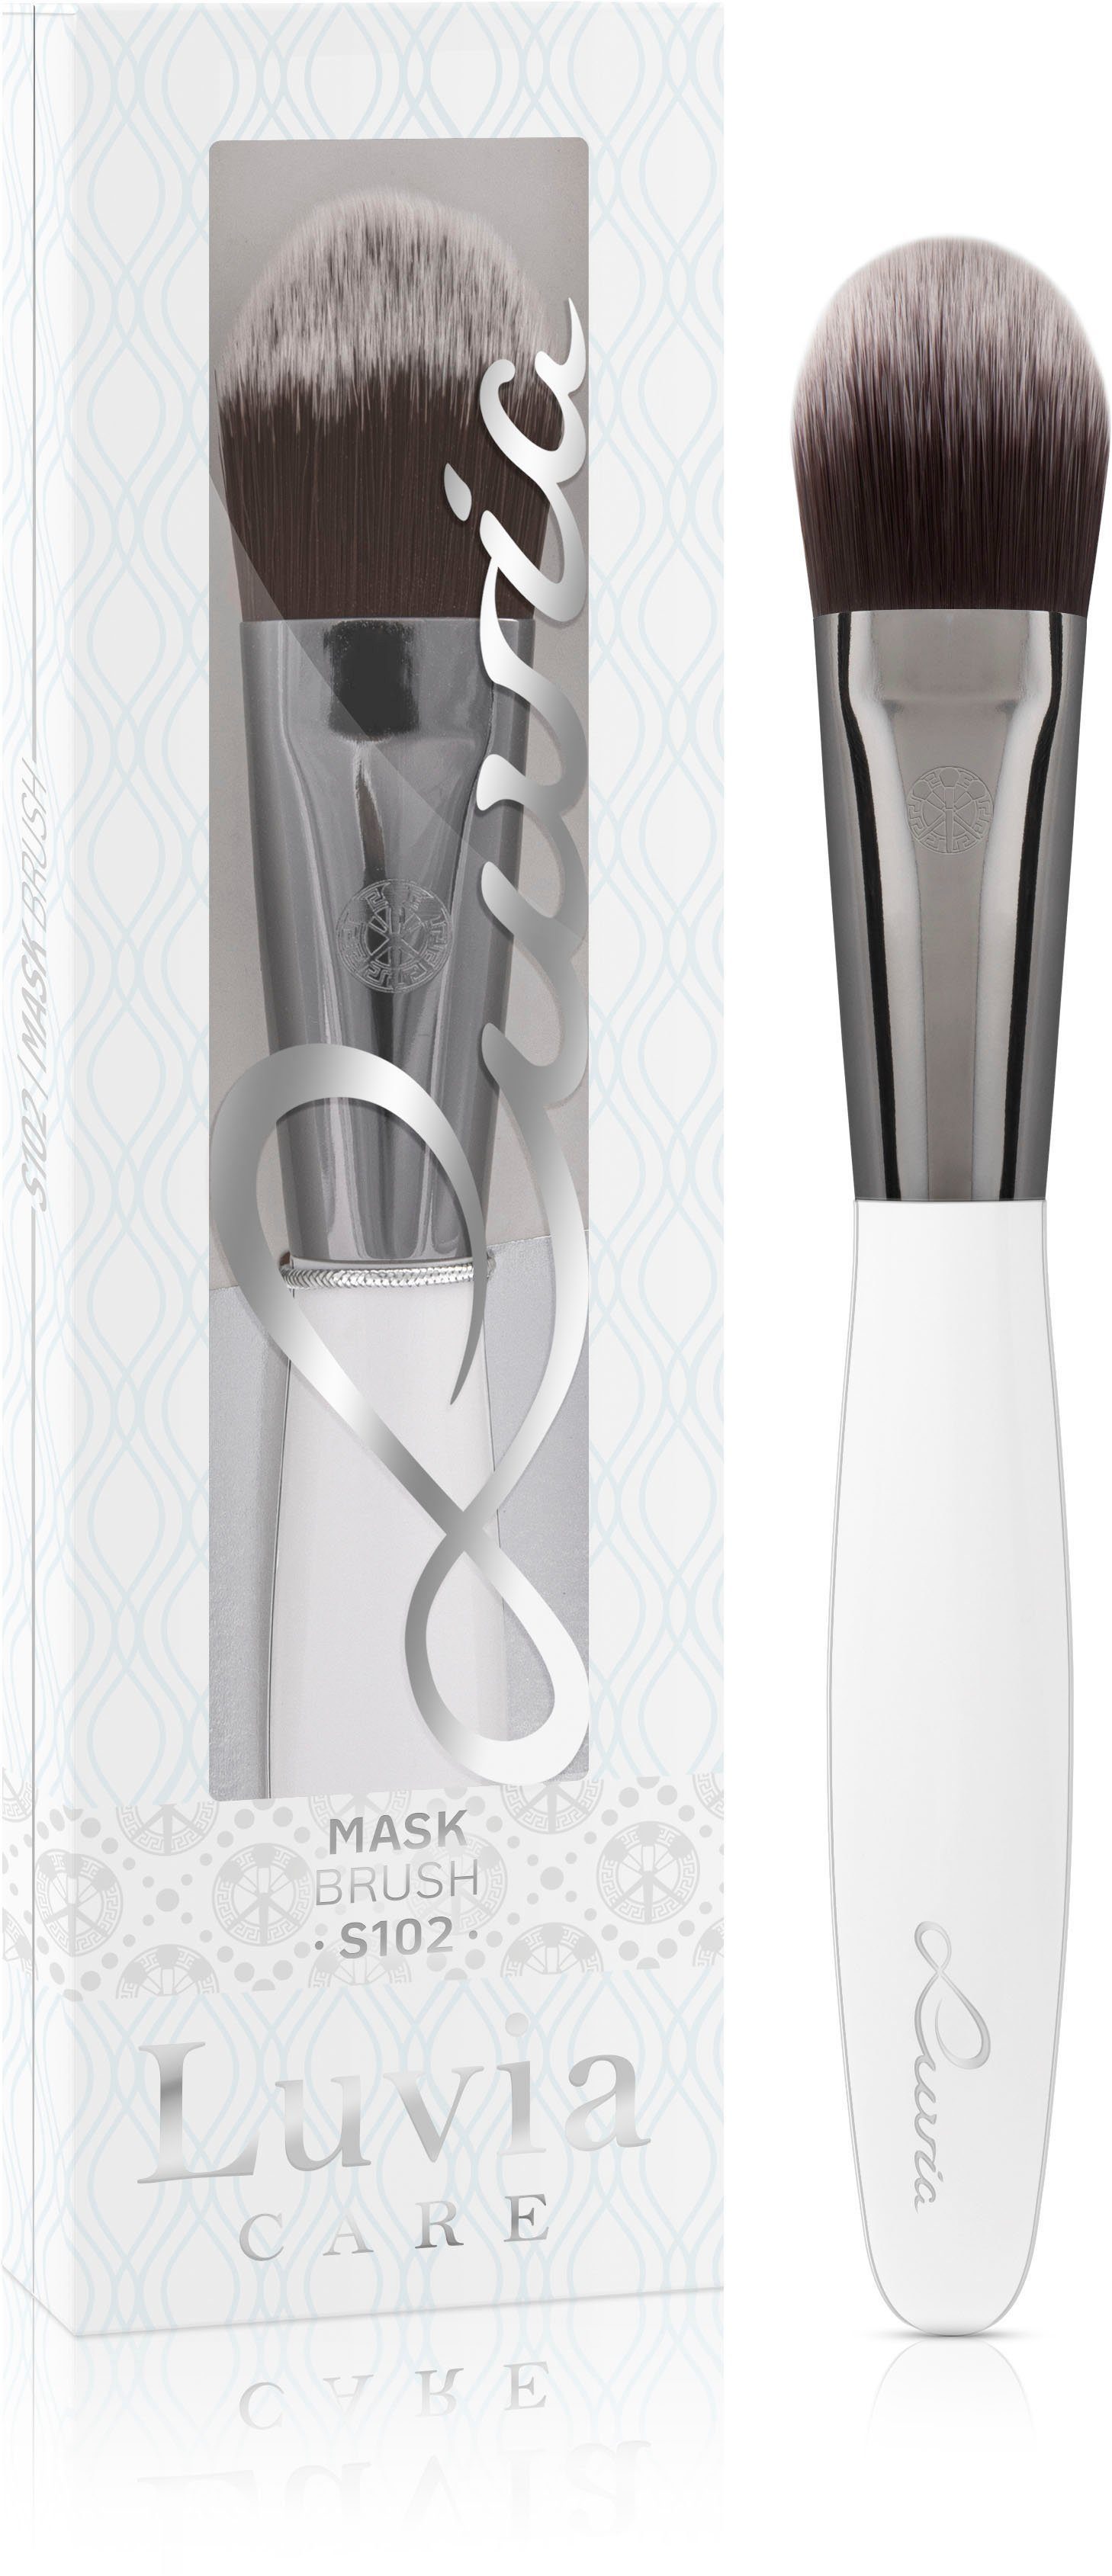 Cosmetics Mask Maskenpinsel Luvia Brush